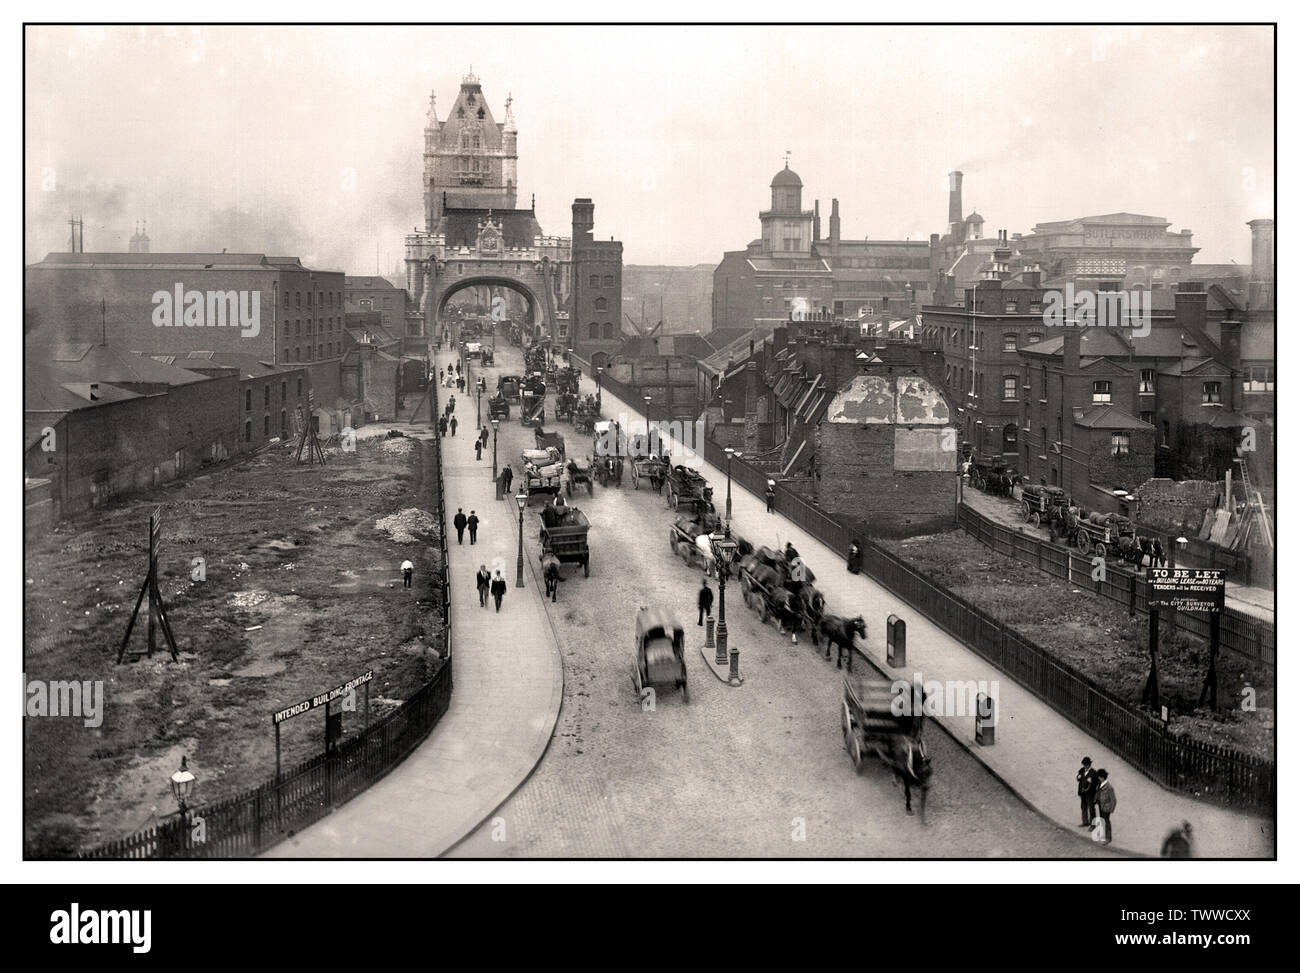 LONDRES VINTAGE HISTORIQUE TOWER BRIDGE ROAD Vintage 1900 époque victorienne image B&W de Tower Bridge et de la région montrant une variété de calèches tirées par des chevaux et des transports industriels commerciaux Londres Royaume-Uni Banque D'Images